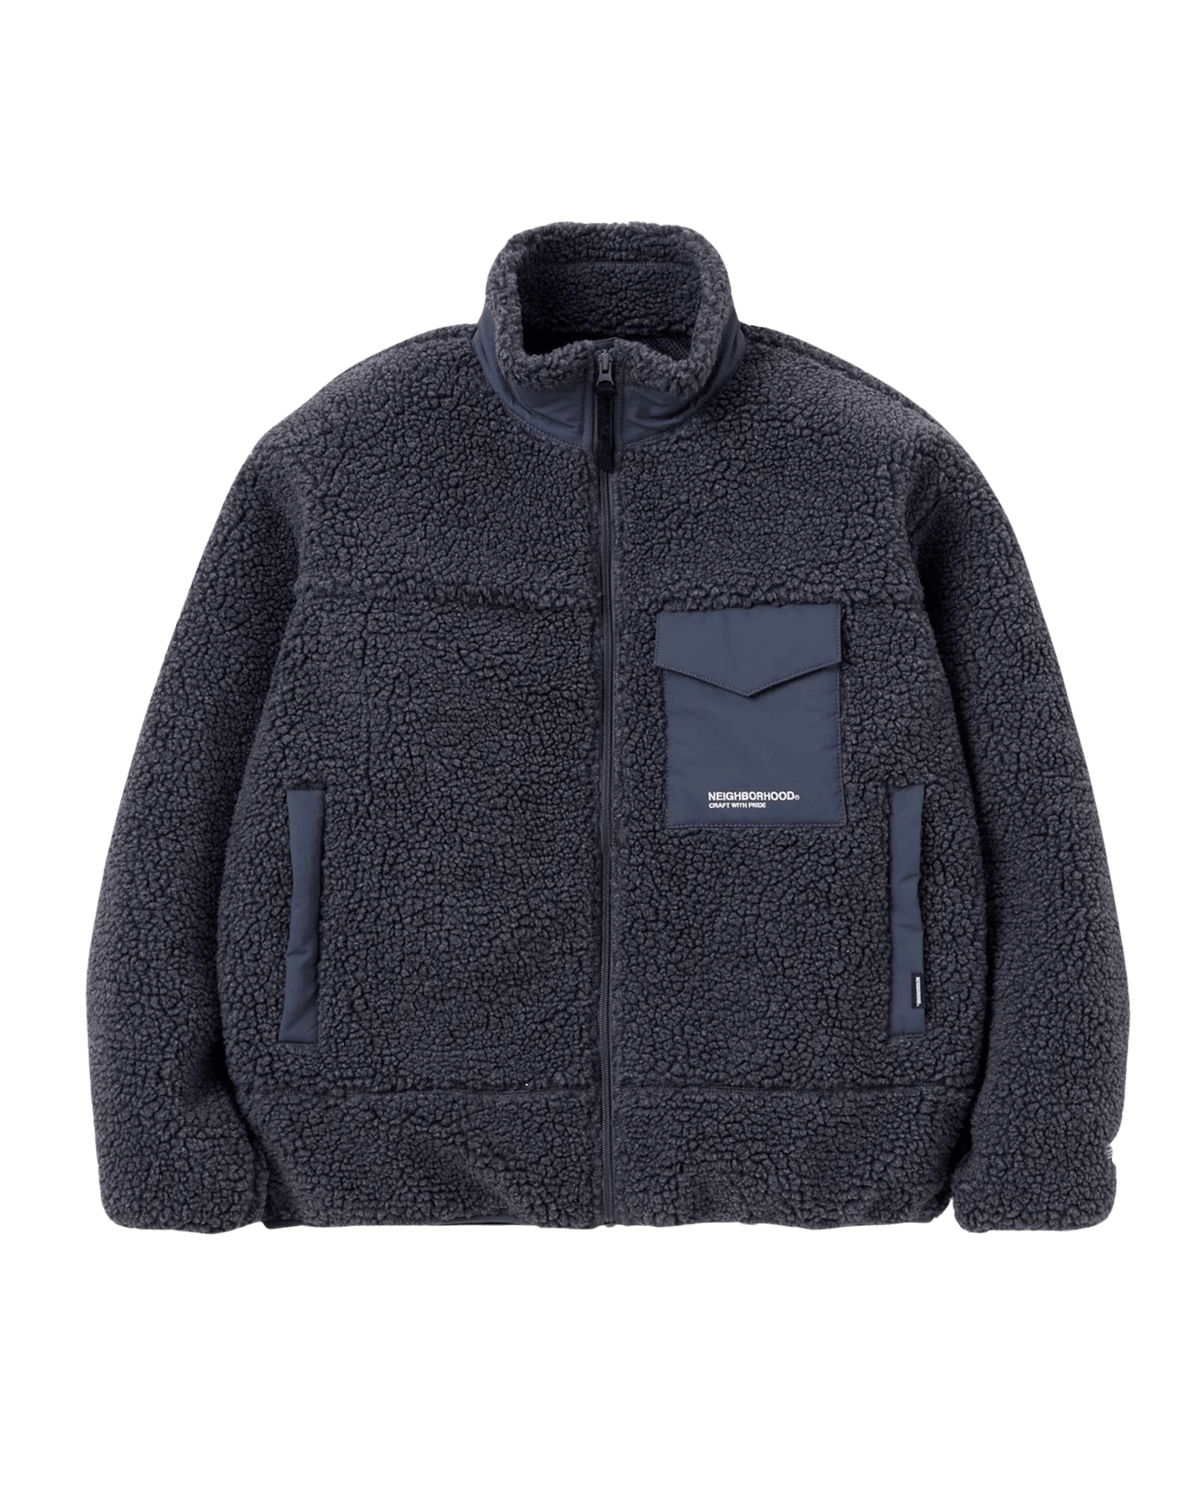 Boa Fleece Jacket $189 Neighborhood Outerwear Fleece Jackets Grey